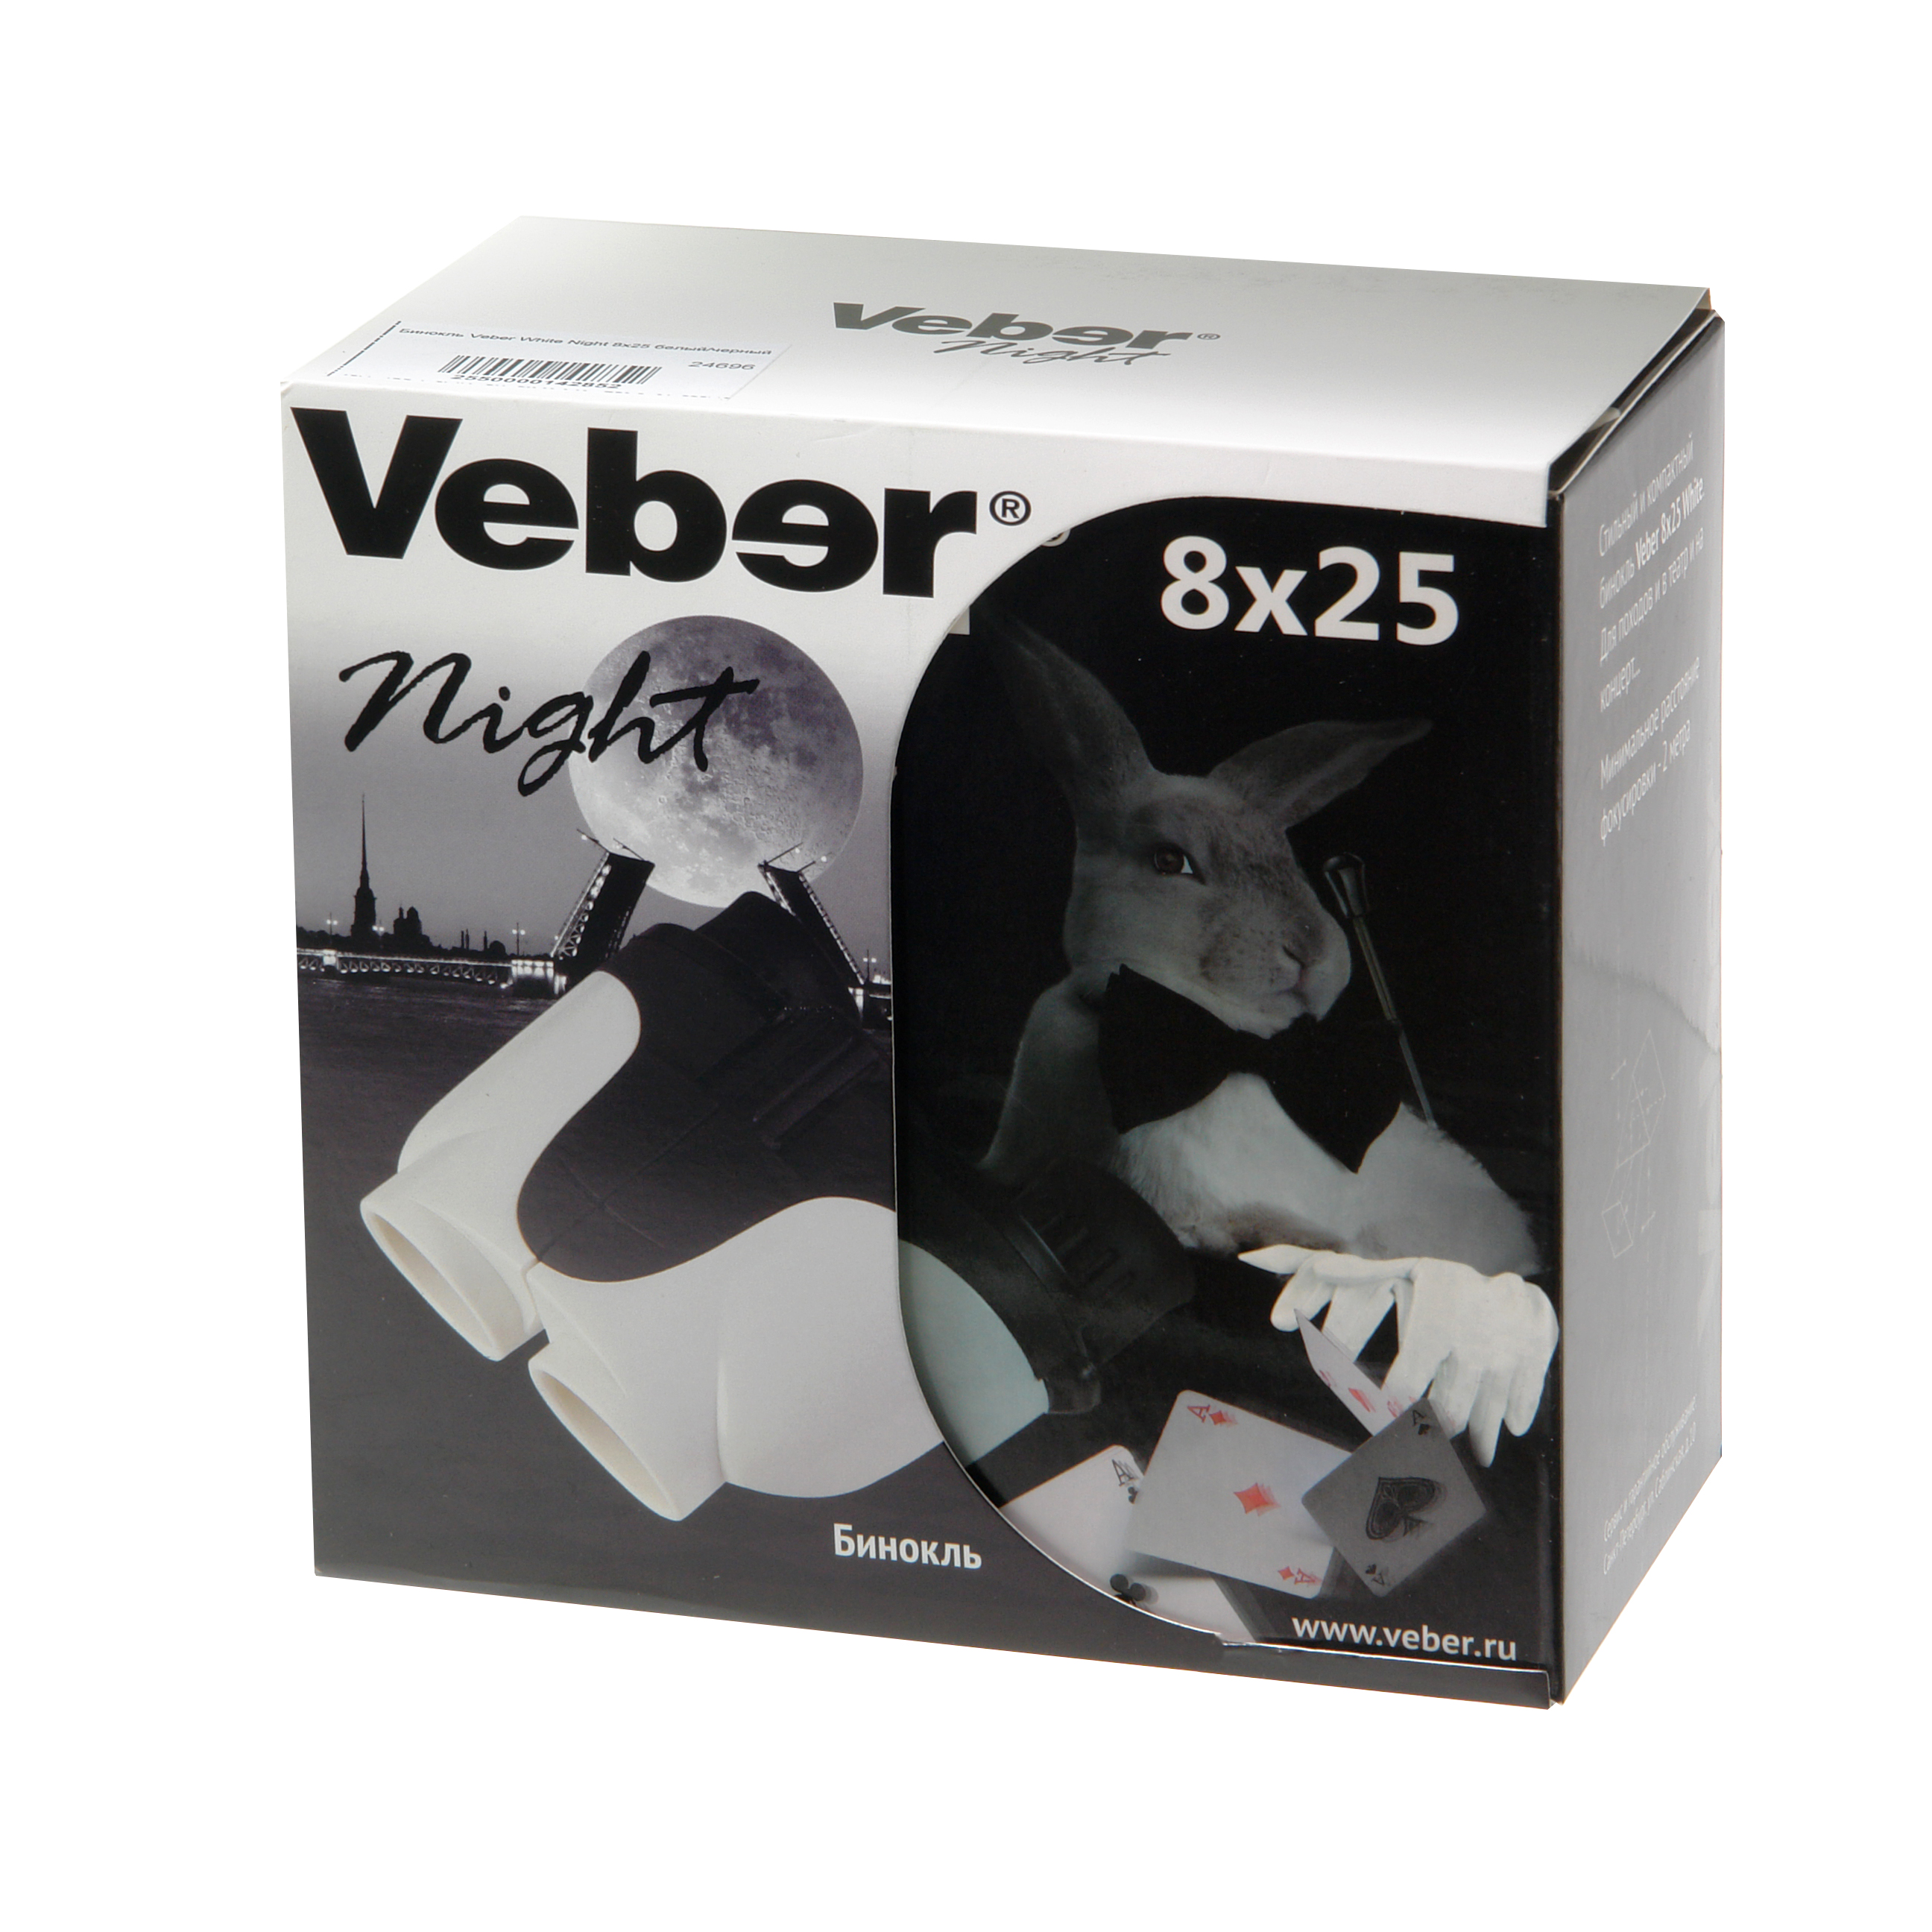   Veber White Night 8x25 /   Ultra-mart